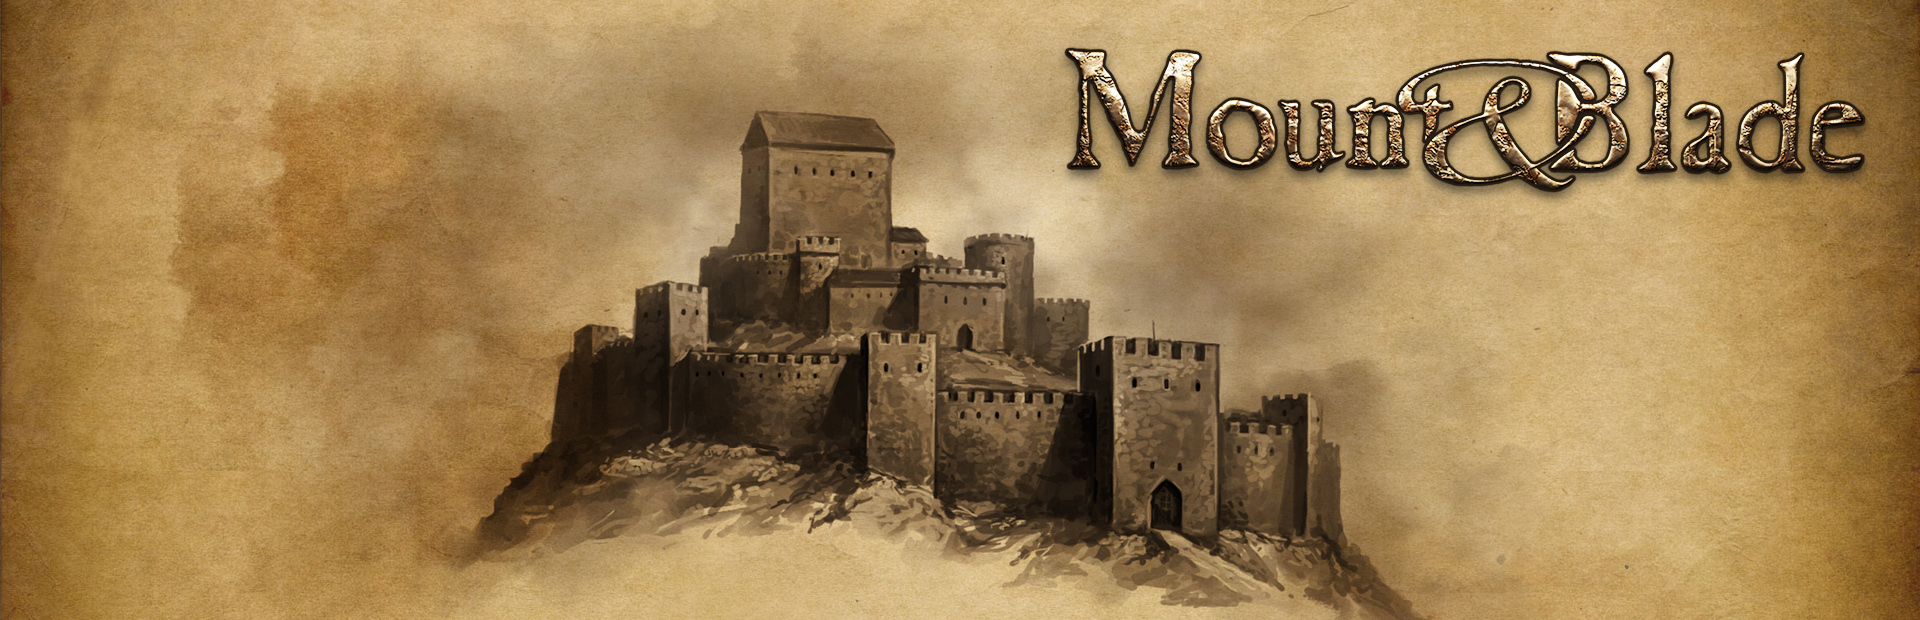 دانلود بازی Mount & Blade برای پی سی | گیمباتو